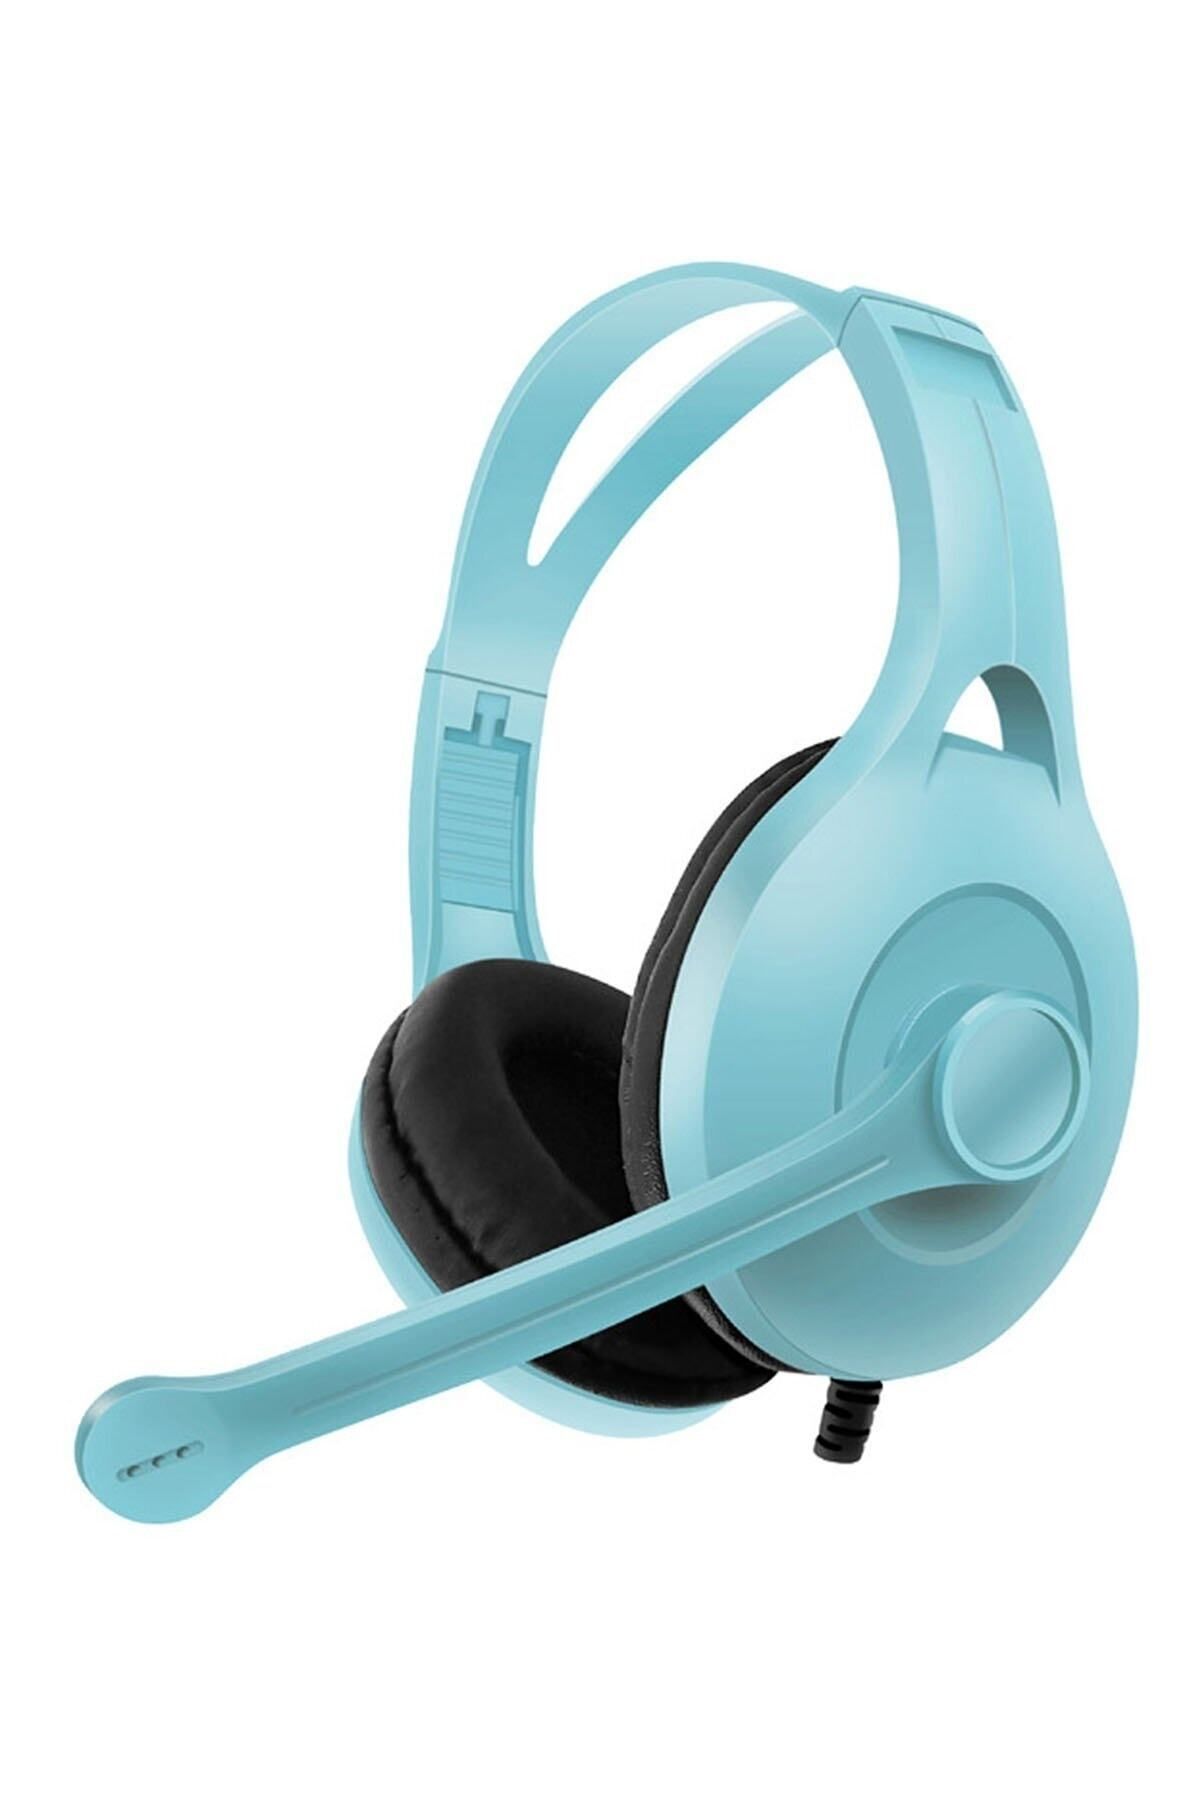 Branzino Kablolu Oyuncu Kulaklık Kafa Bantlı Kulaküstü Mikrofonlu Gaming Kulaklık Cep Telefonu&tablet Uyumlu